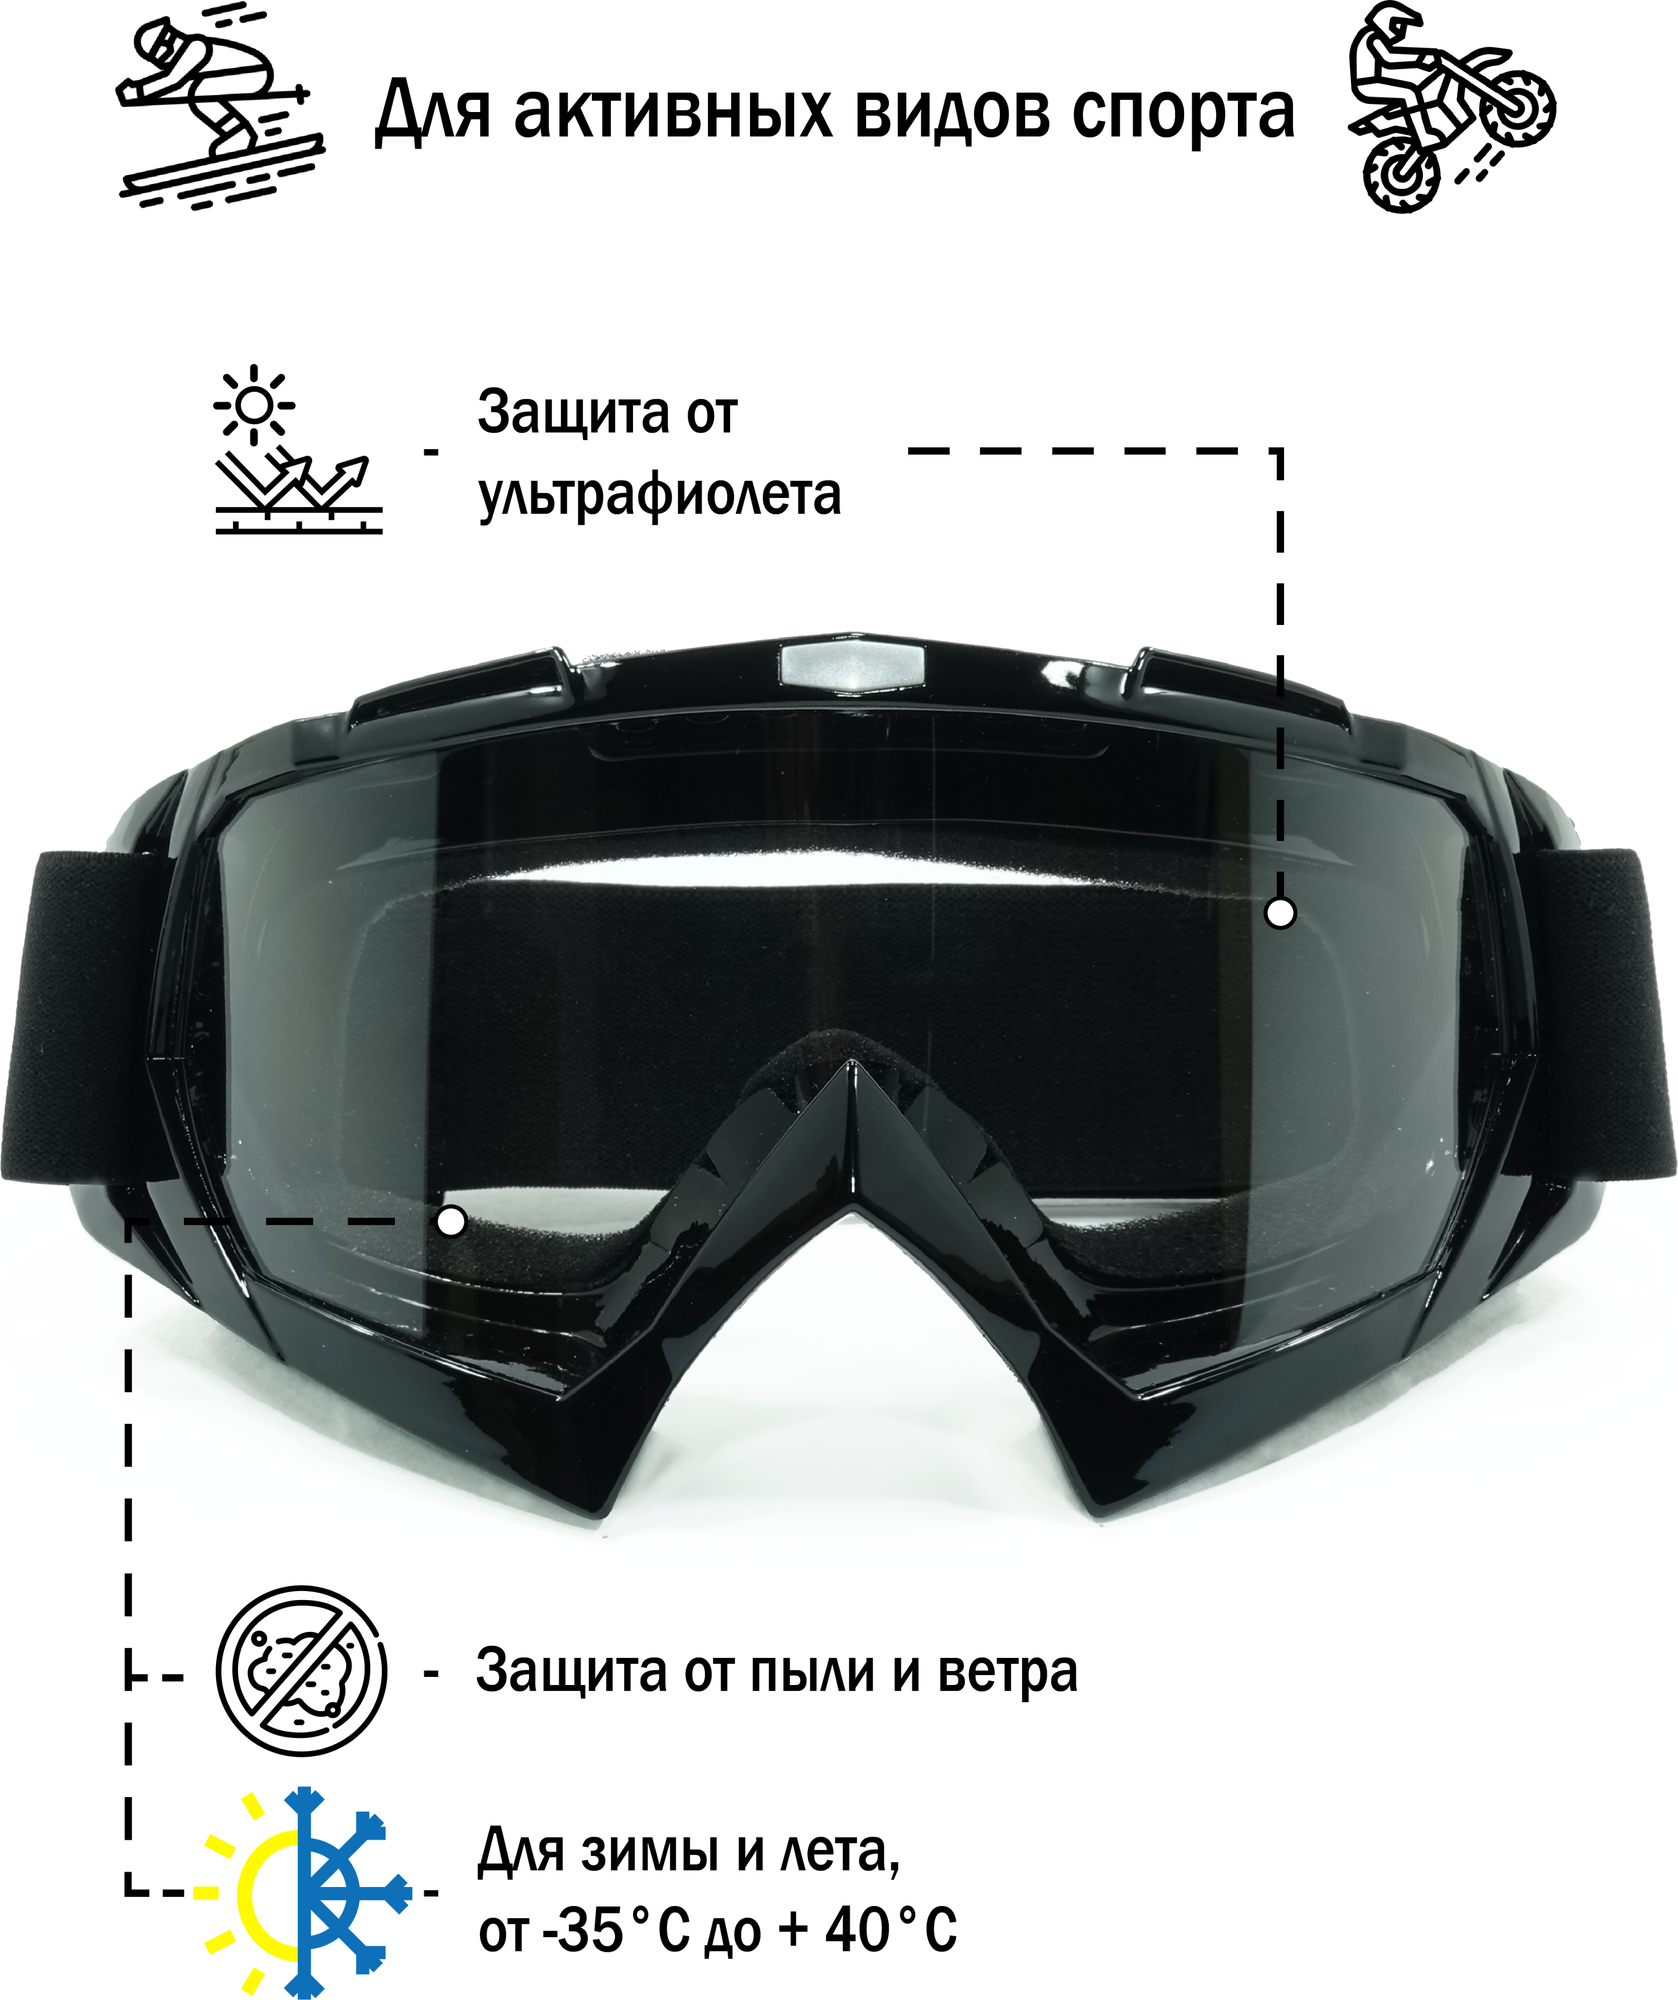 Мото очки горнолыжные очки маска горнолыжная маска мотоочки для кроссового шлема и снегохода кроссовые очки